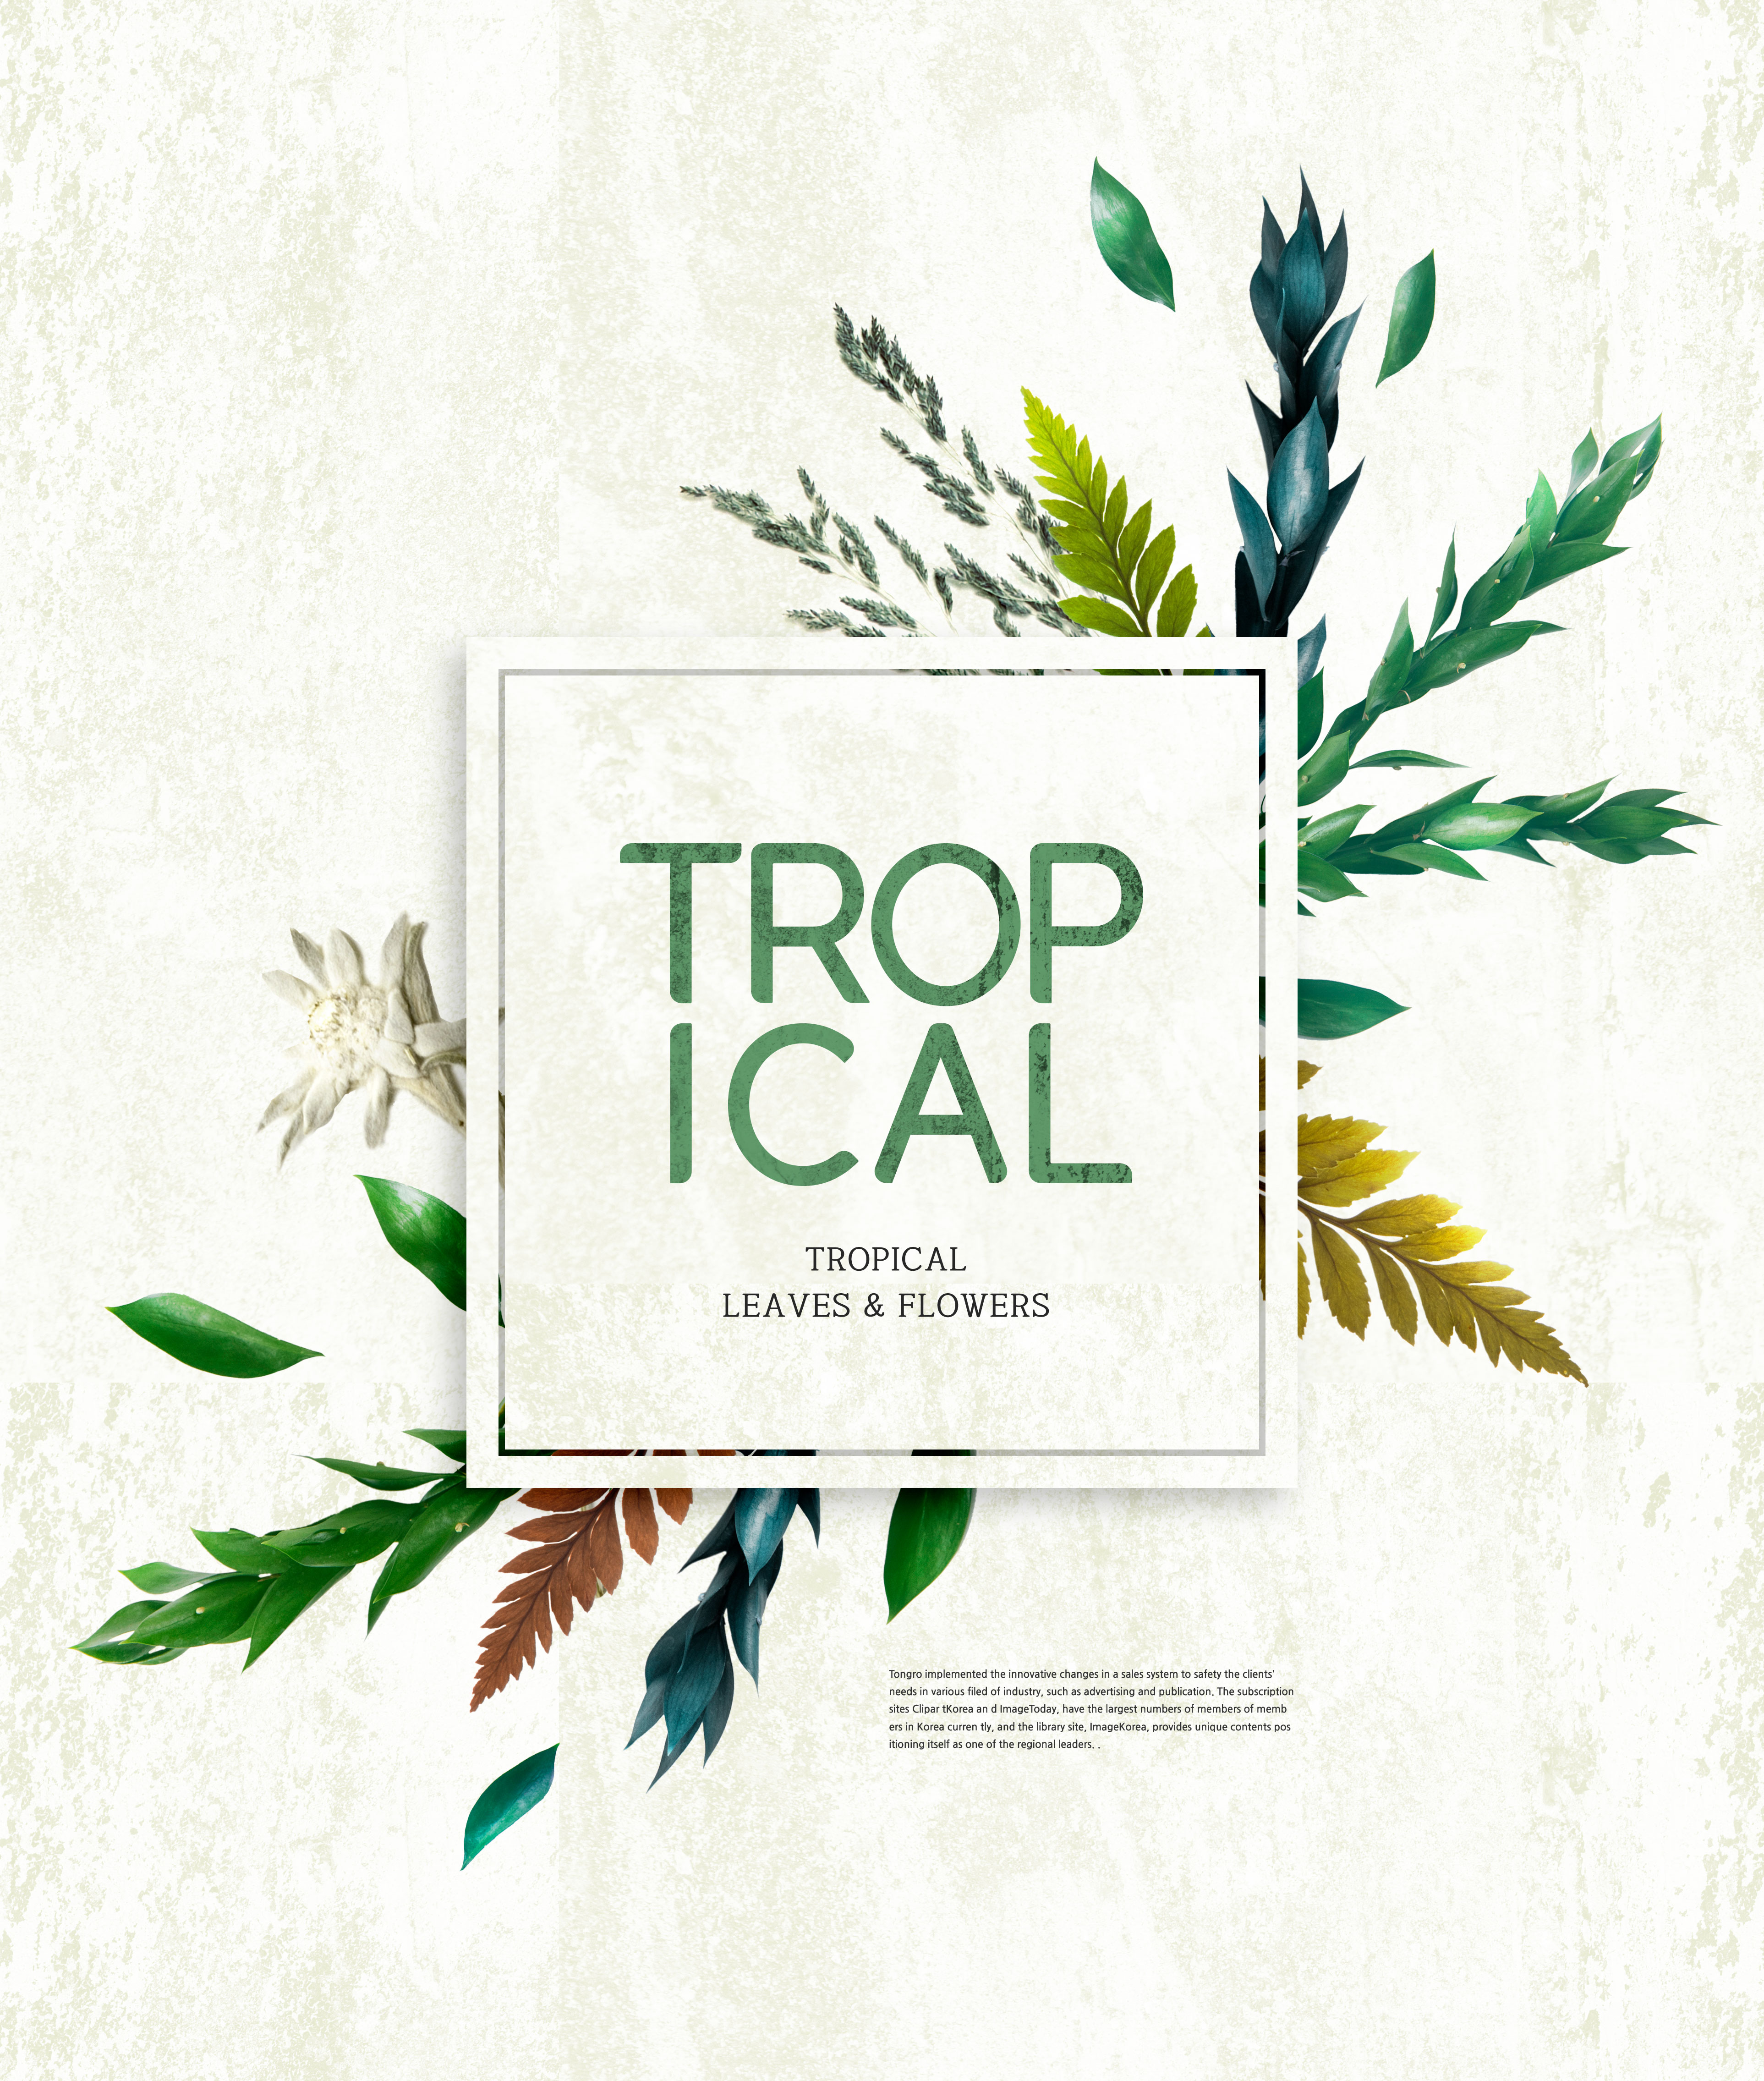 热带植物叶子&花卉图案海报设计素材插图(2)